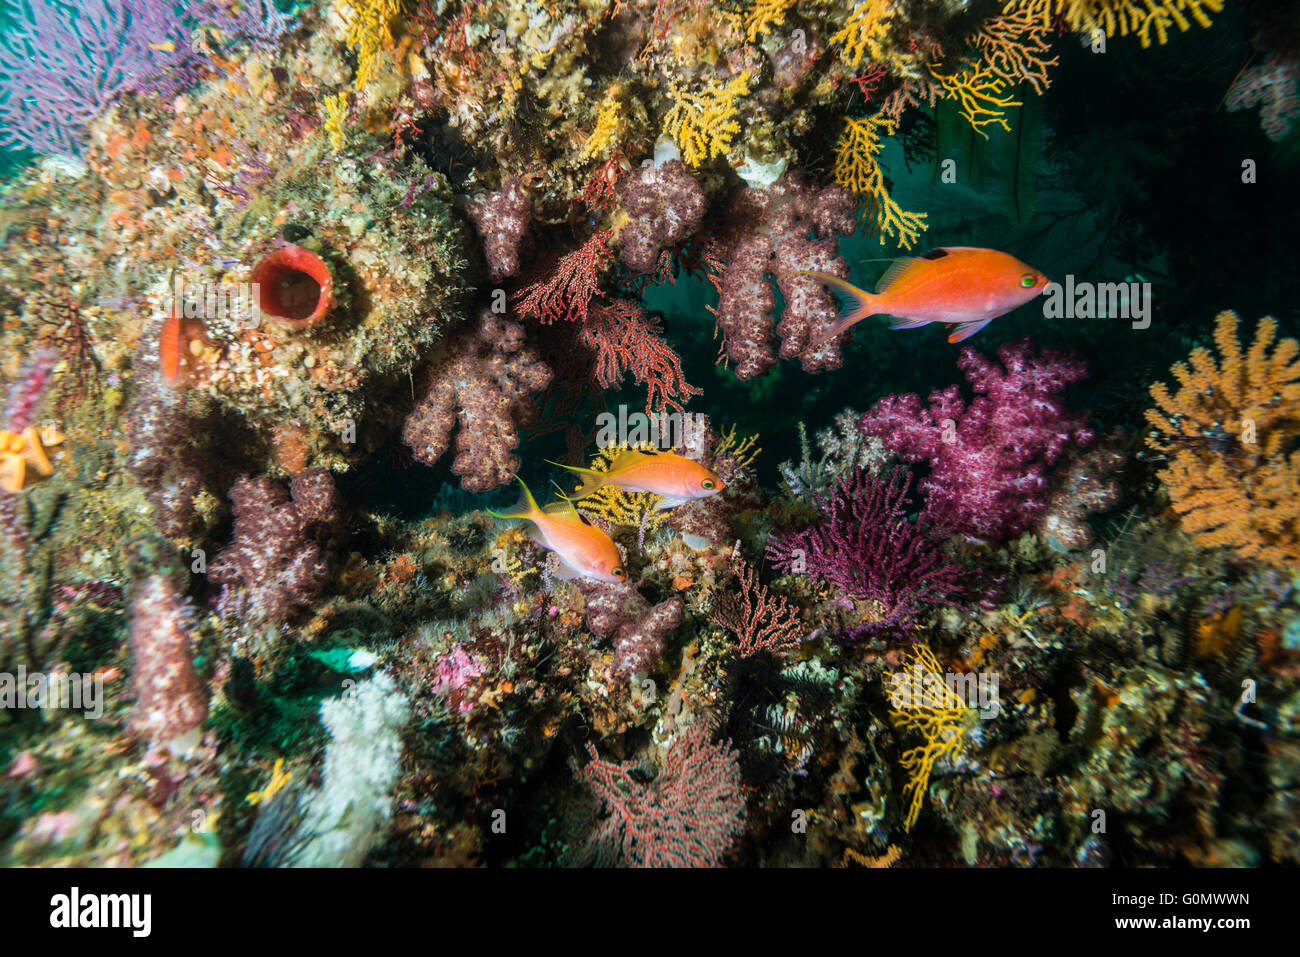 Kirsche Bass. Wissenschaftlicher Name: Sacura Margaritacea. Bei künstlichen Fisch Riff schwimmen. Owase, Mie, Japan. Tiefe 20m Stockfoto